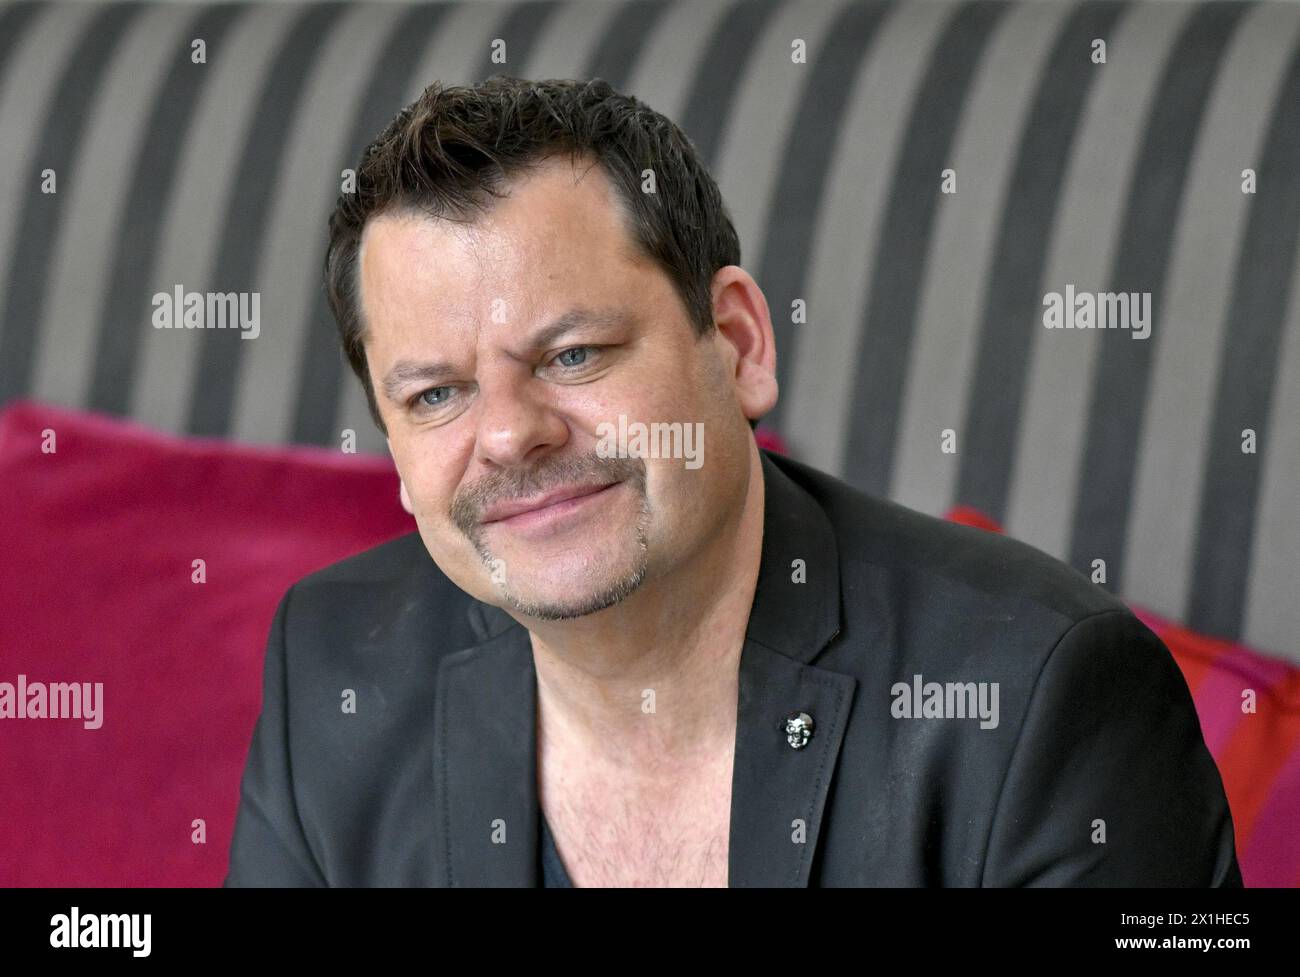 Le comédien allemand Ingo Appelt lors d'un entretien avec Austria presse Agentur à Vienne, Autriche, le 25 mars 2019. - 20190325 PD13310 - Rechteinfo : droits gérés (RM) Banque D'Images